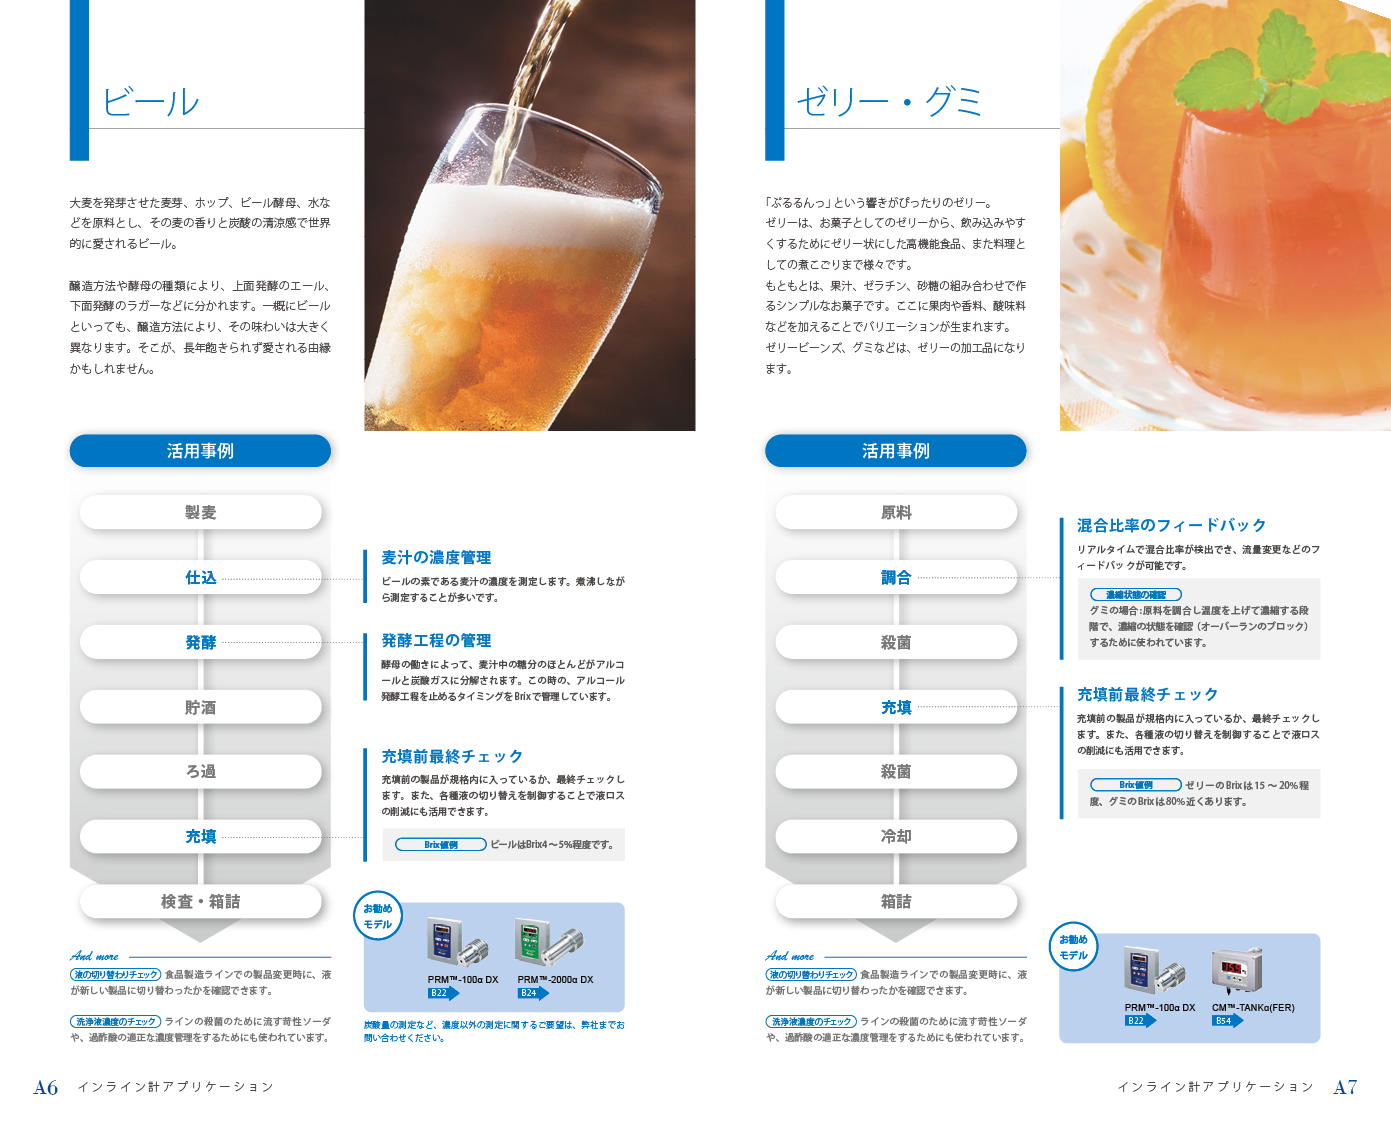 ビール/ゼリー・グミ